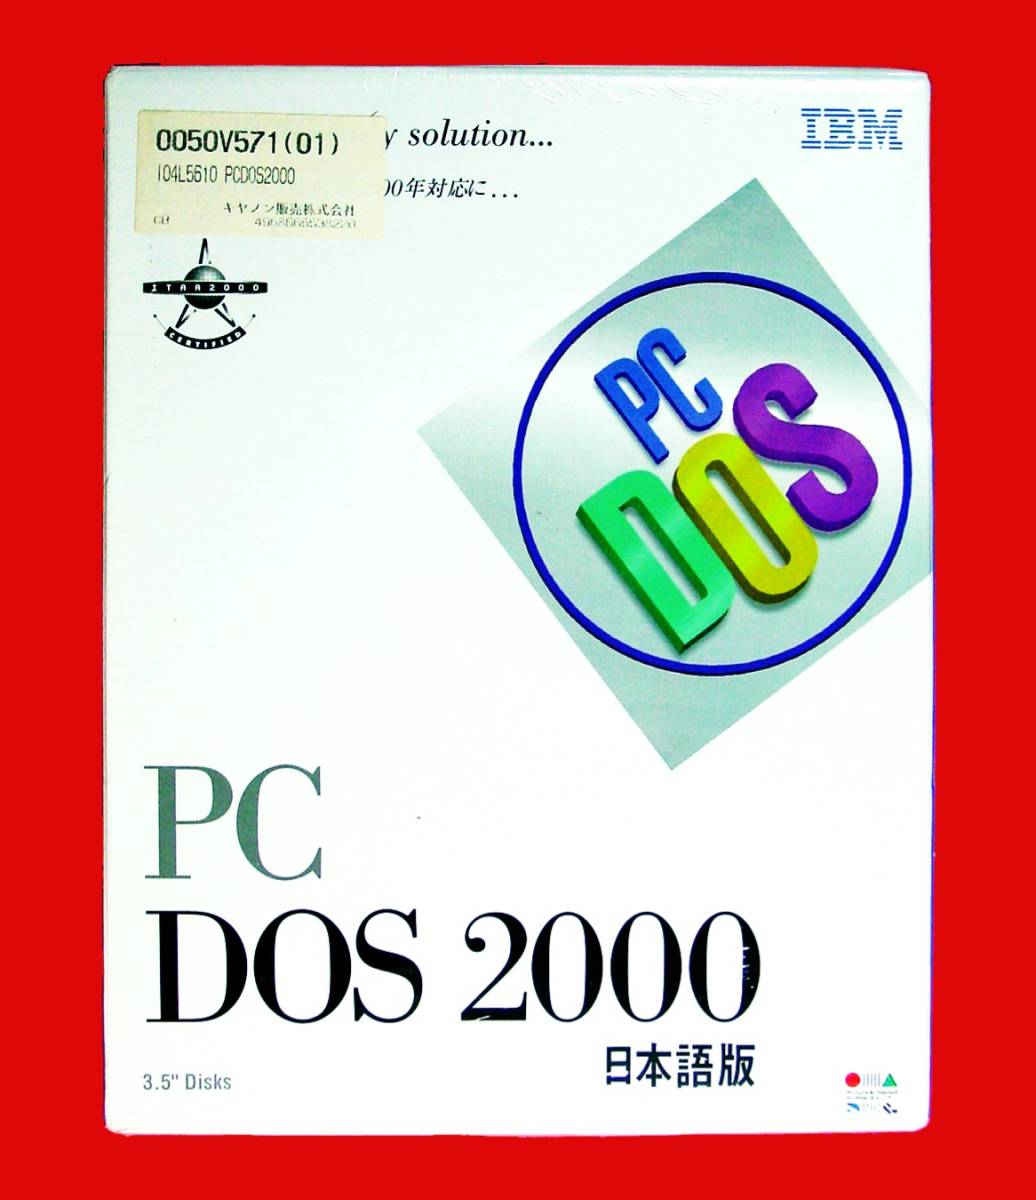 【492】 IBM PC DOS 2000 FD版 未開封品 PCDOS PCドス REXX RAMBOOST スケジューラー Eエディター アンデリート ファイル同期 Stacker